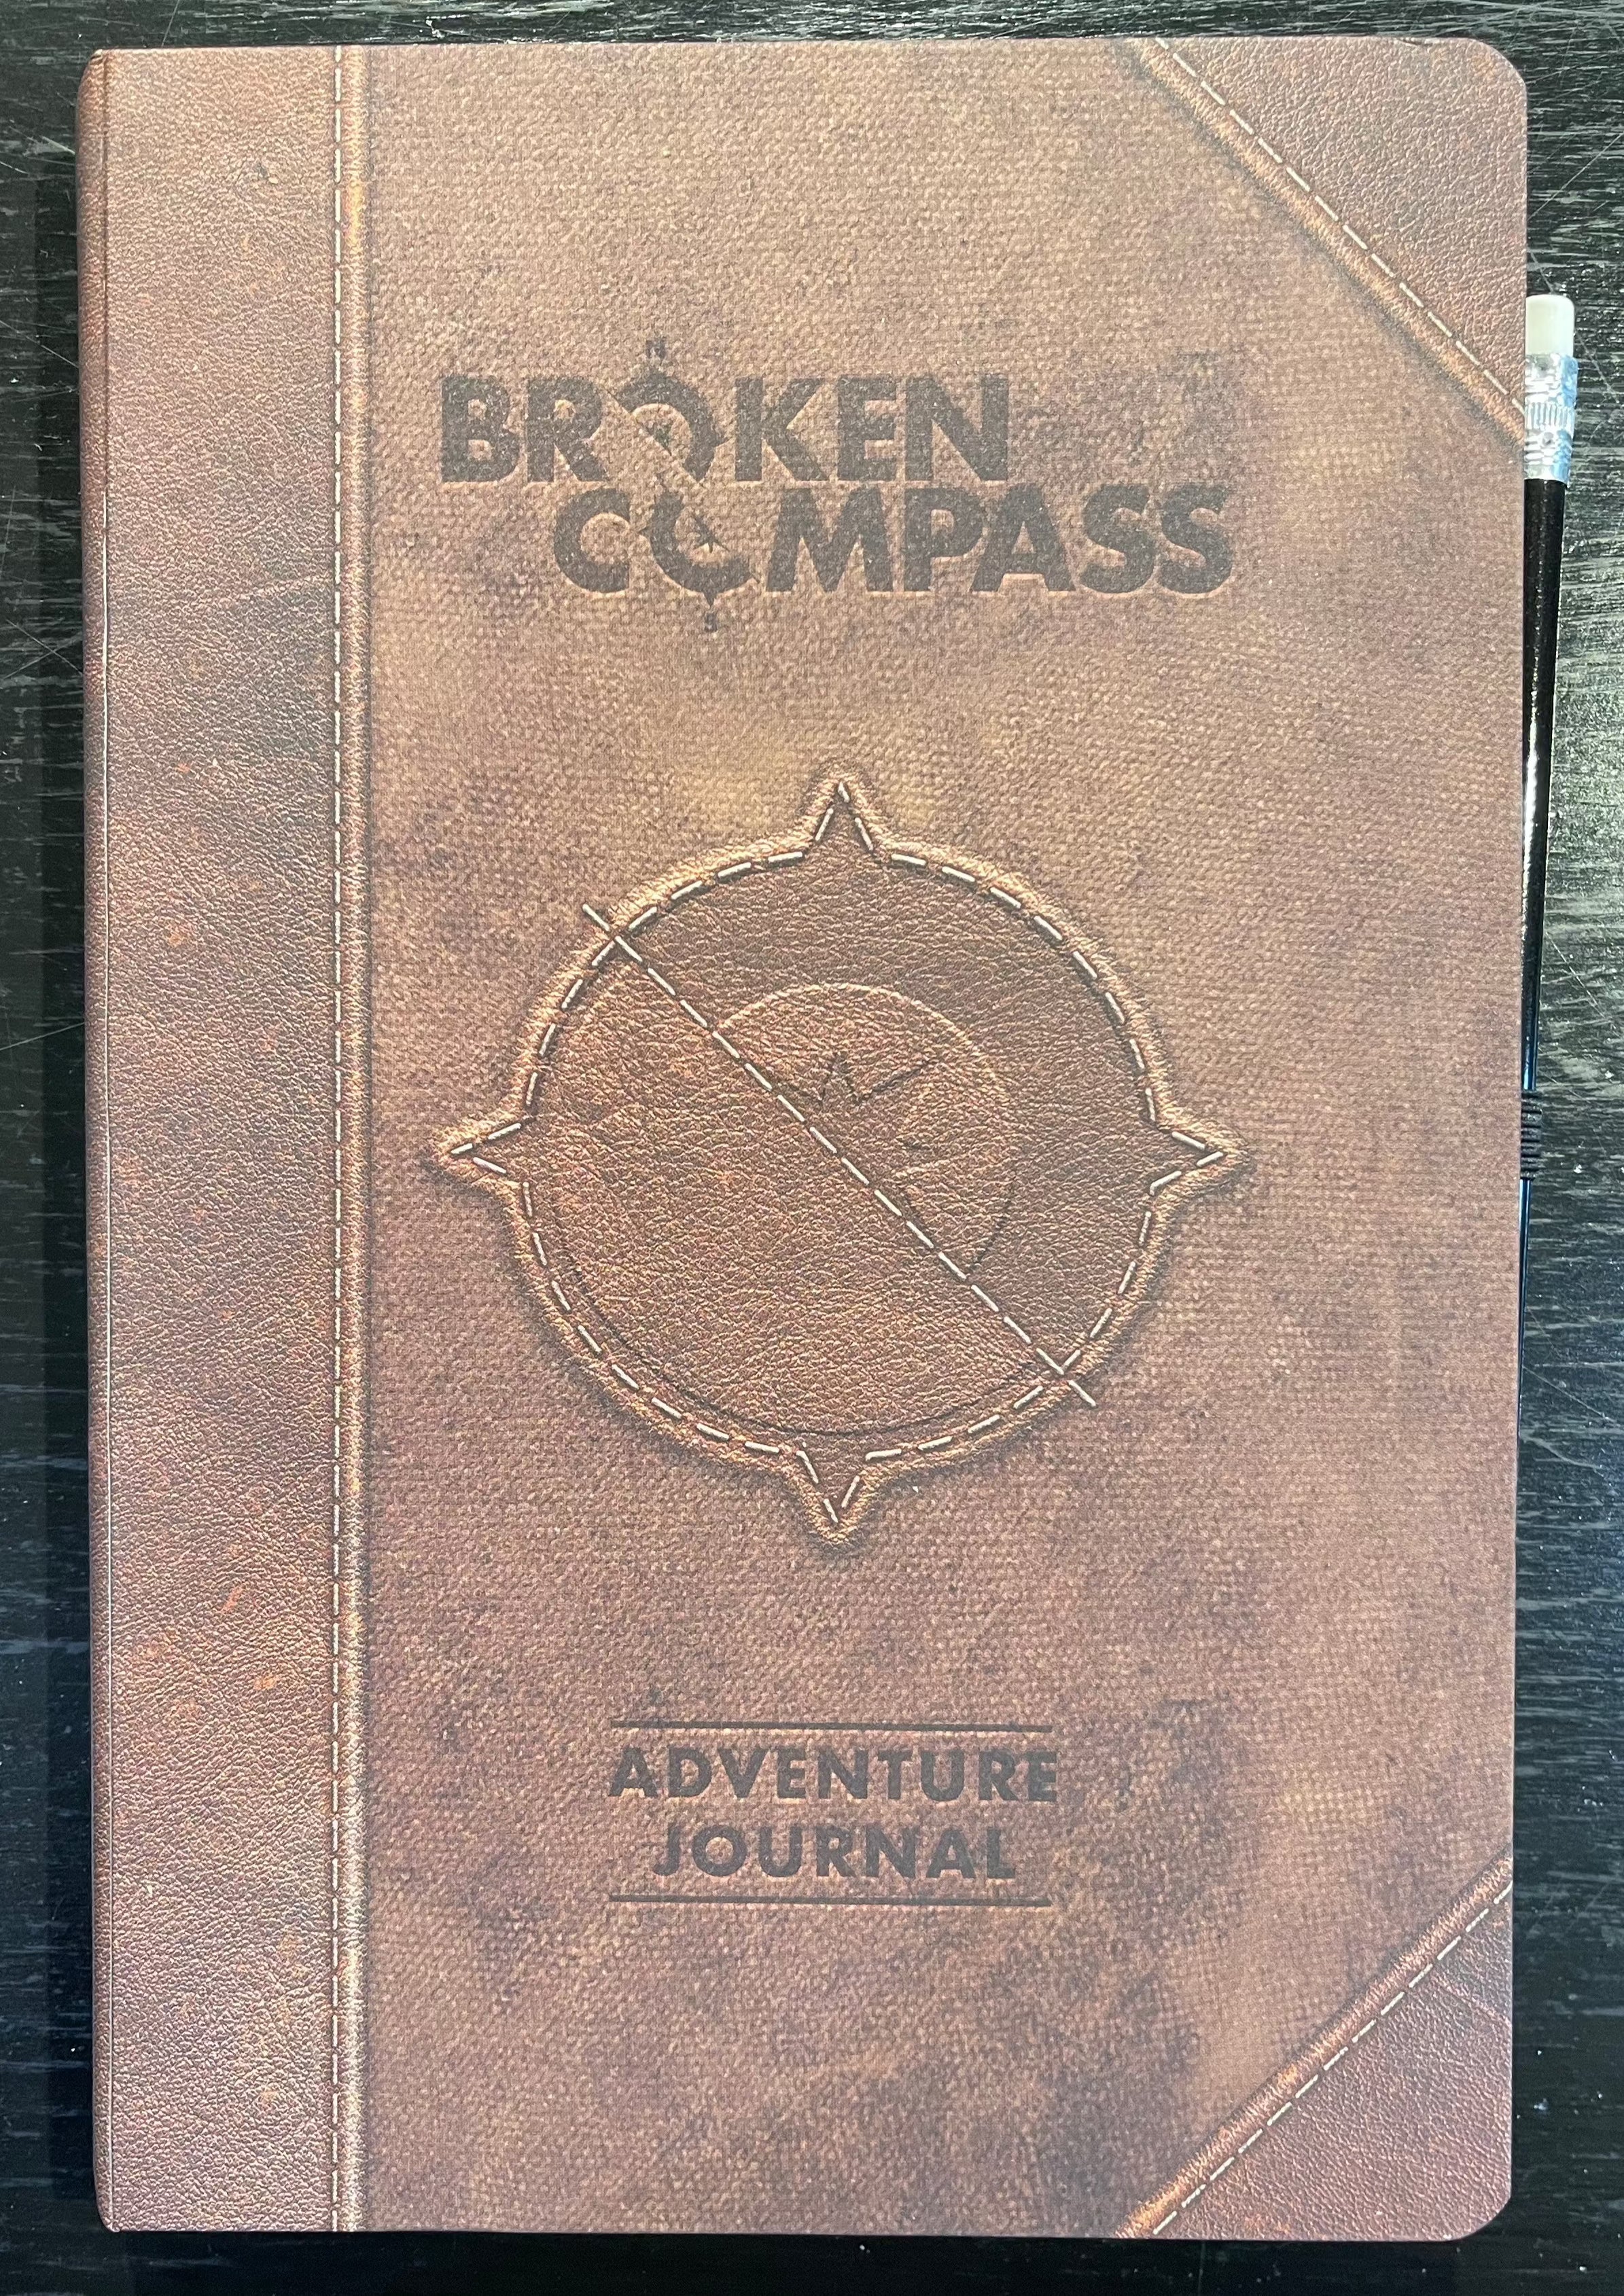 Rental - Broken Compass: Adventure Journal